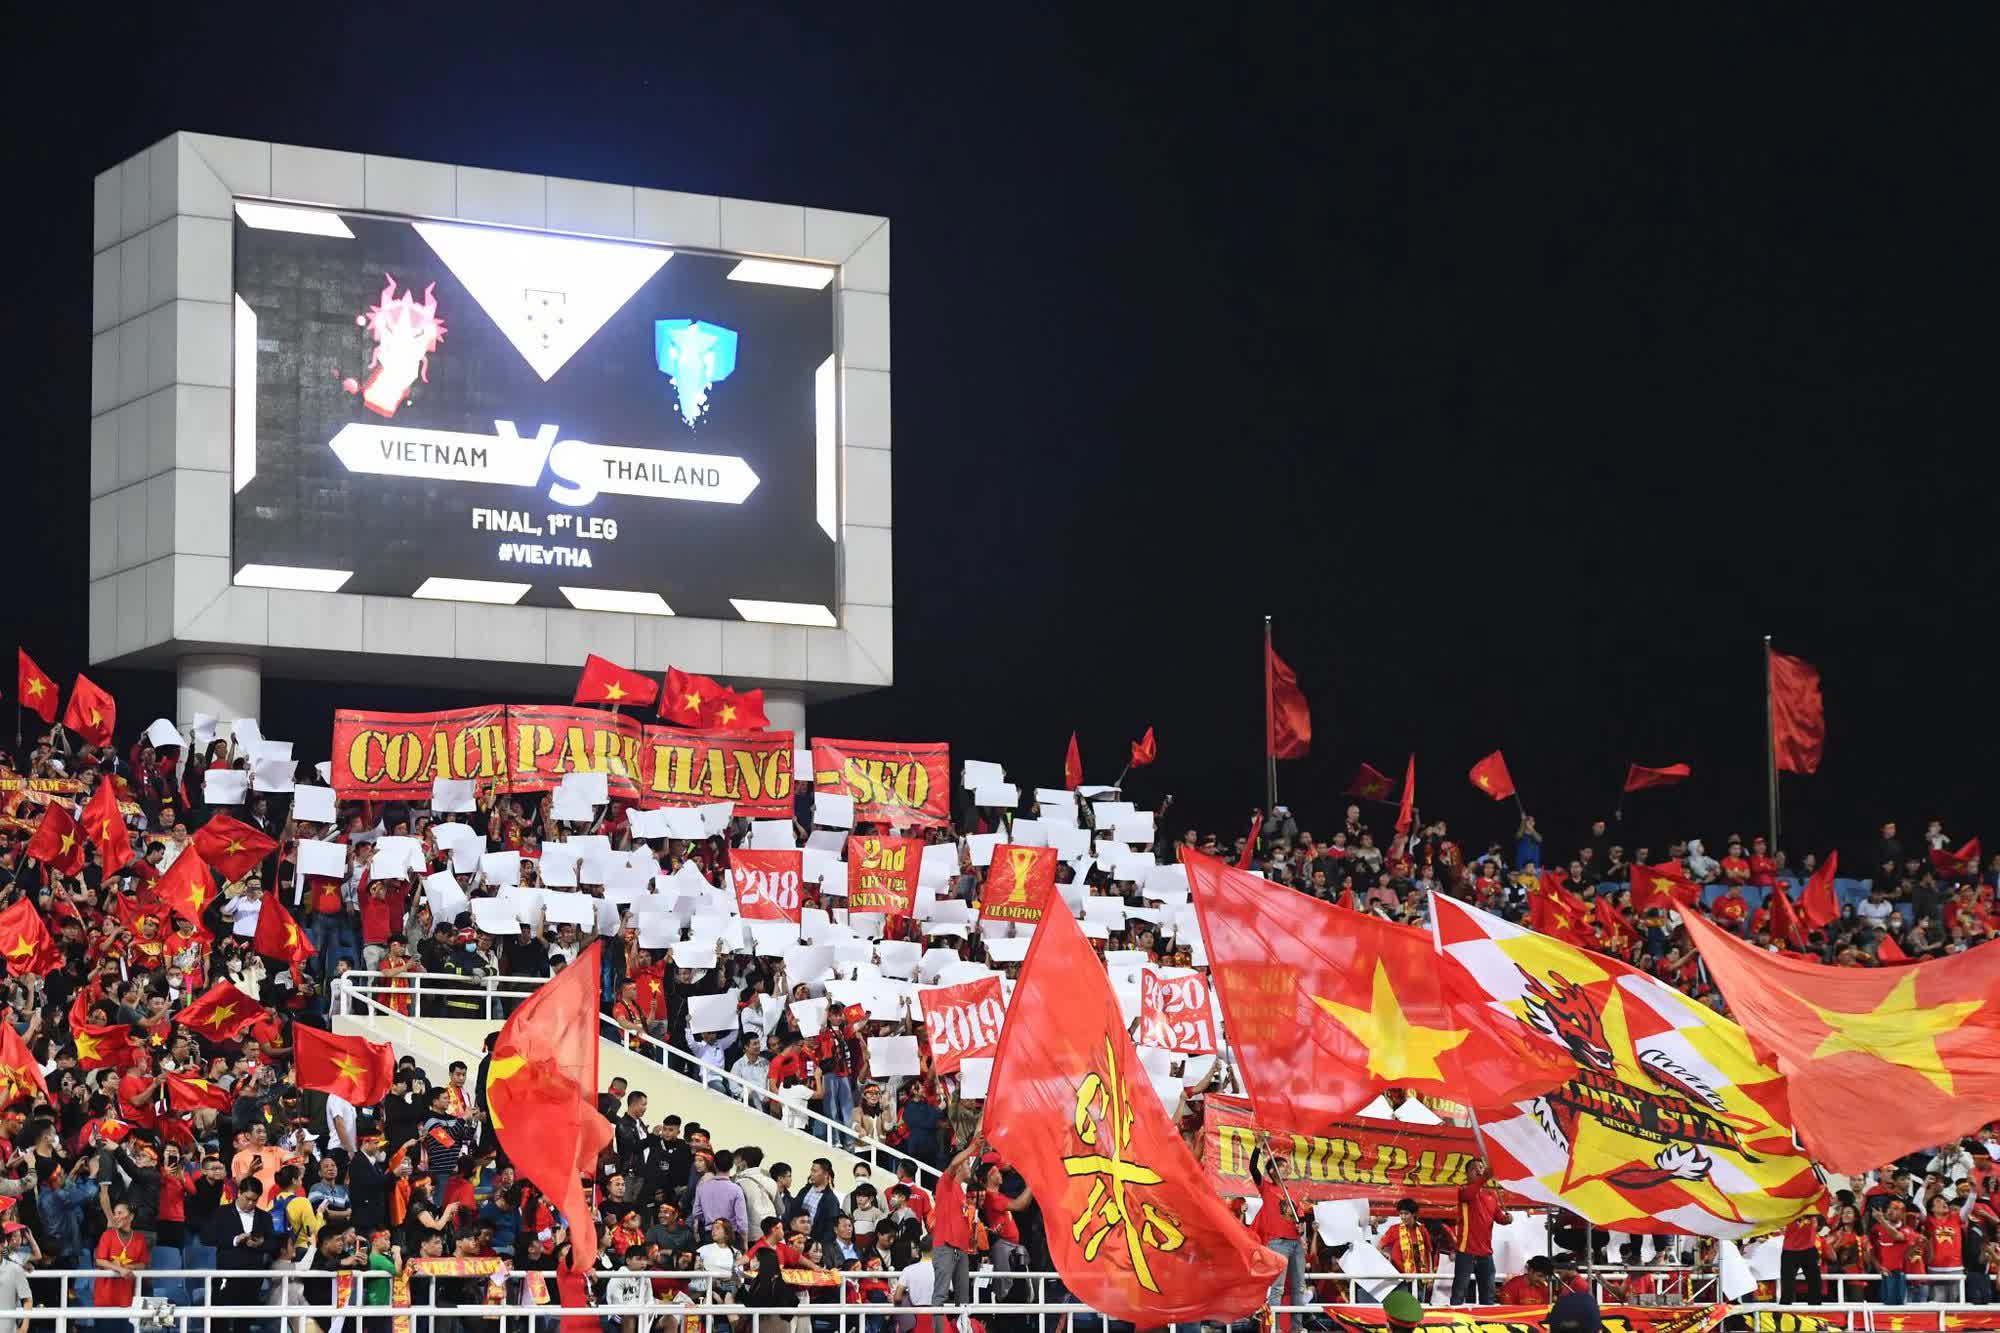 Màn chào cờ đầy xúc động của HLV Park Hang Seo trong trận đấu cuối cùng trên sân Mỹ Đình - Ảnh 5.